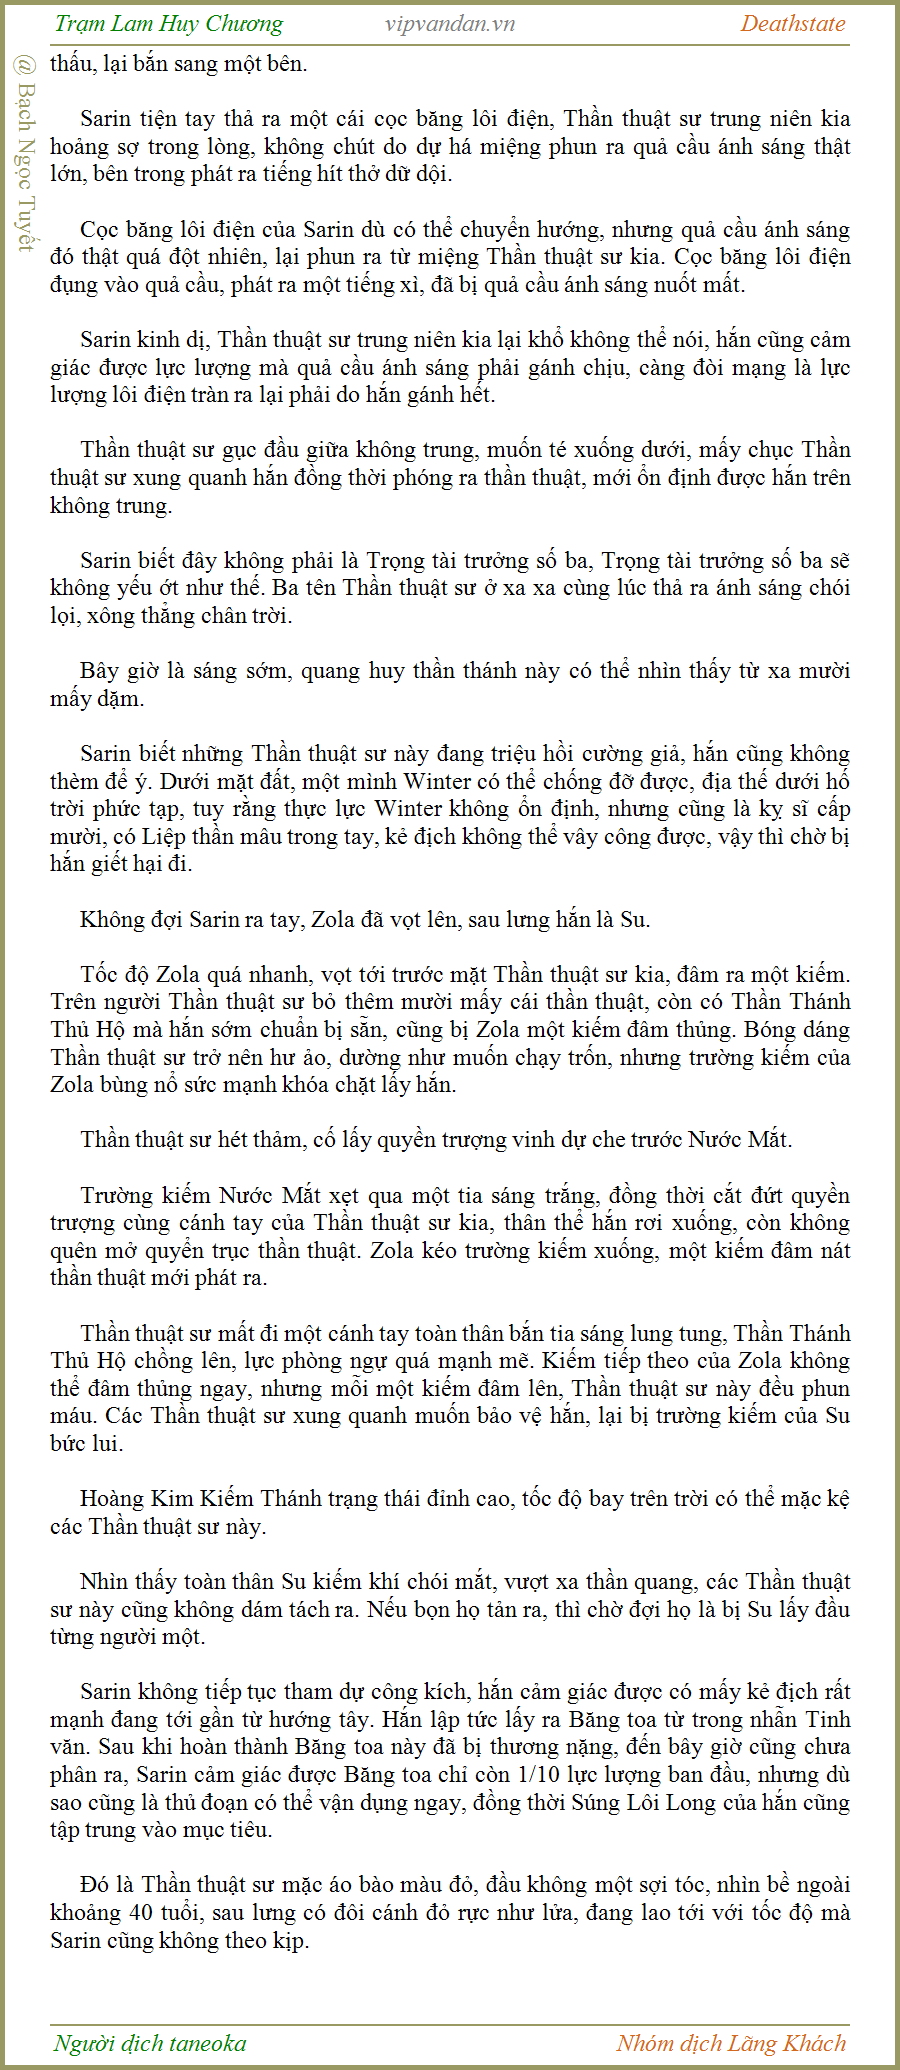 Trạm Lam Huy Chương - Deathstate - FUll - (tháo zen Quyển 3 - Chương 565)